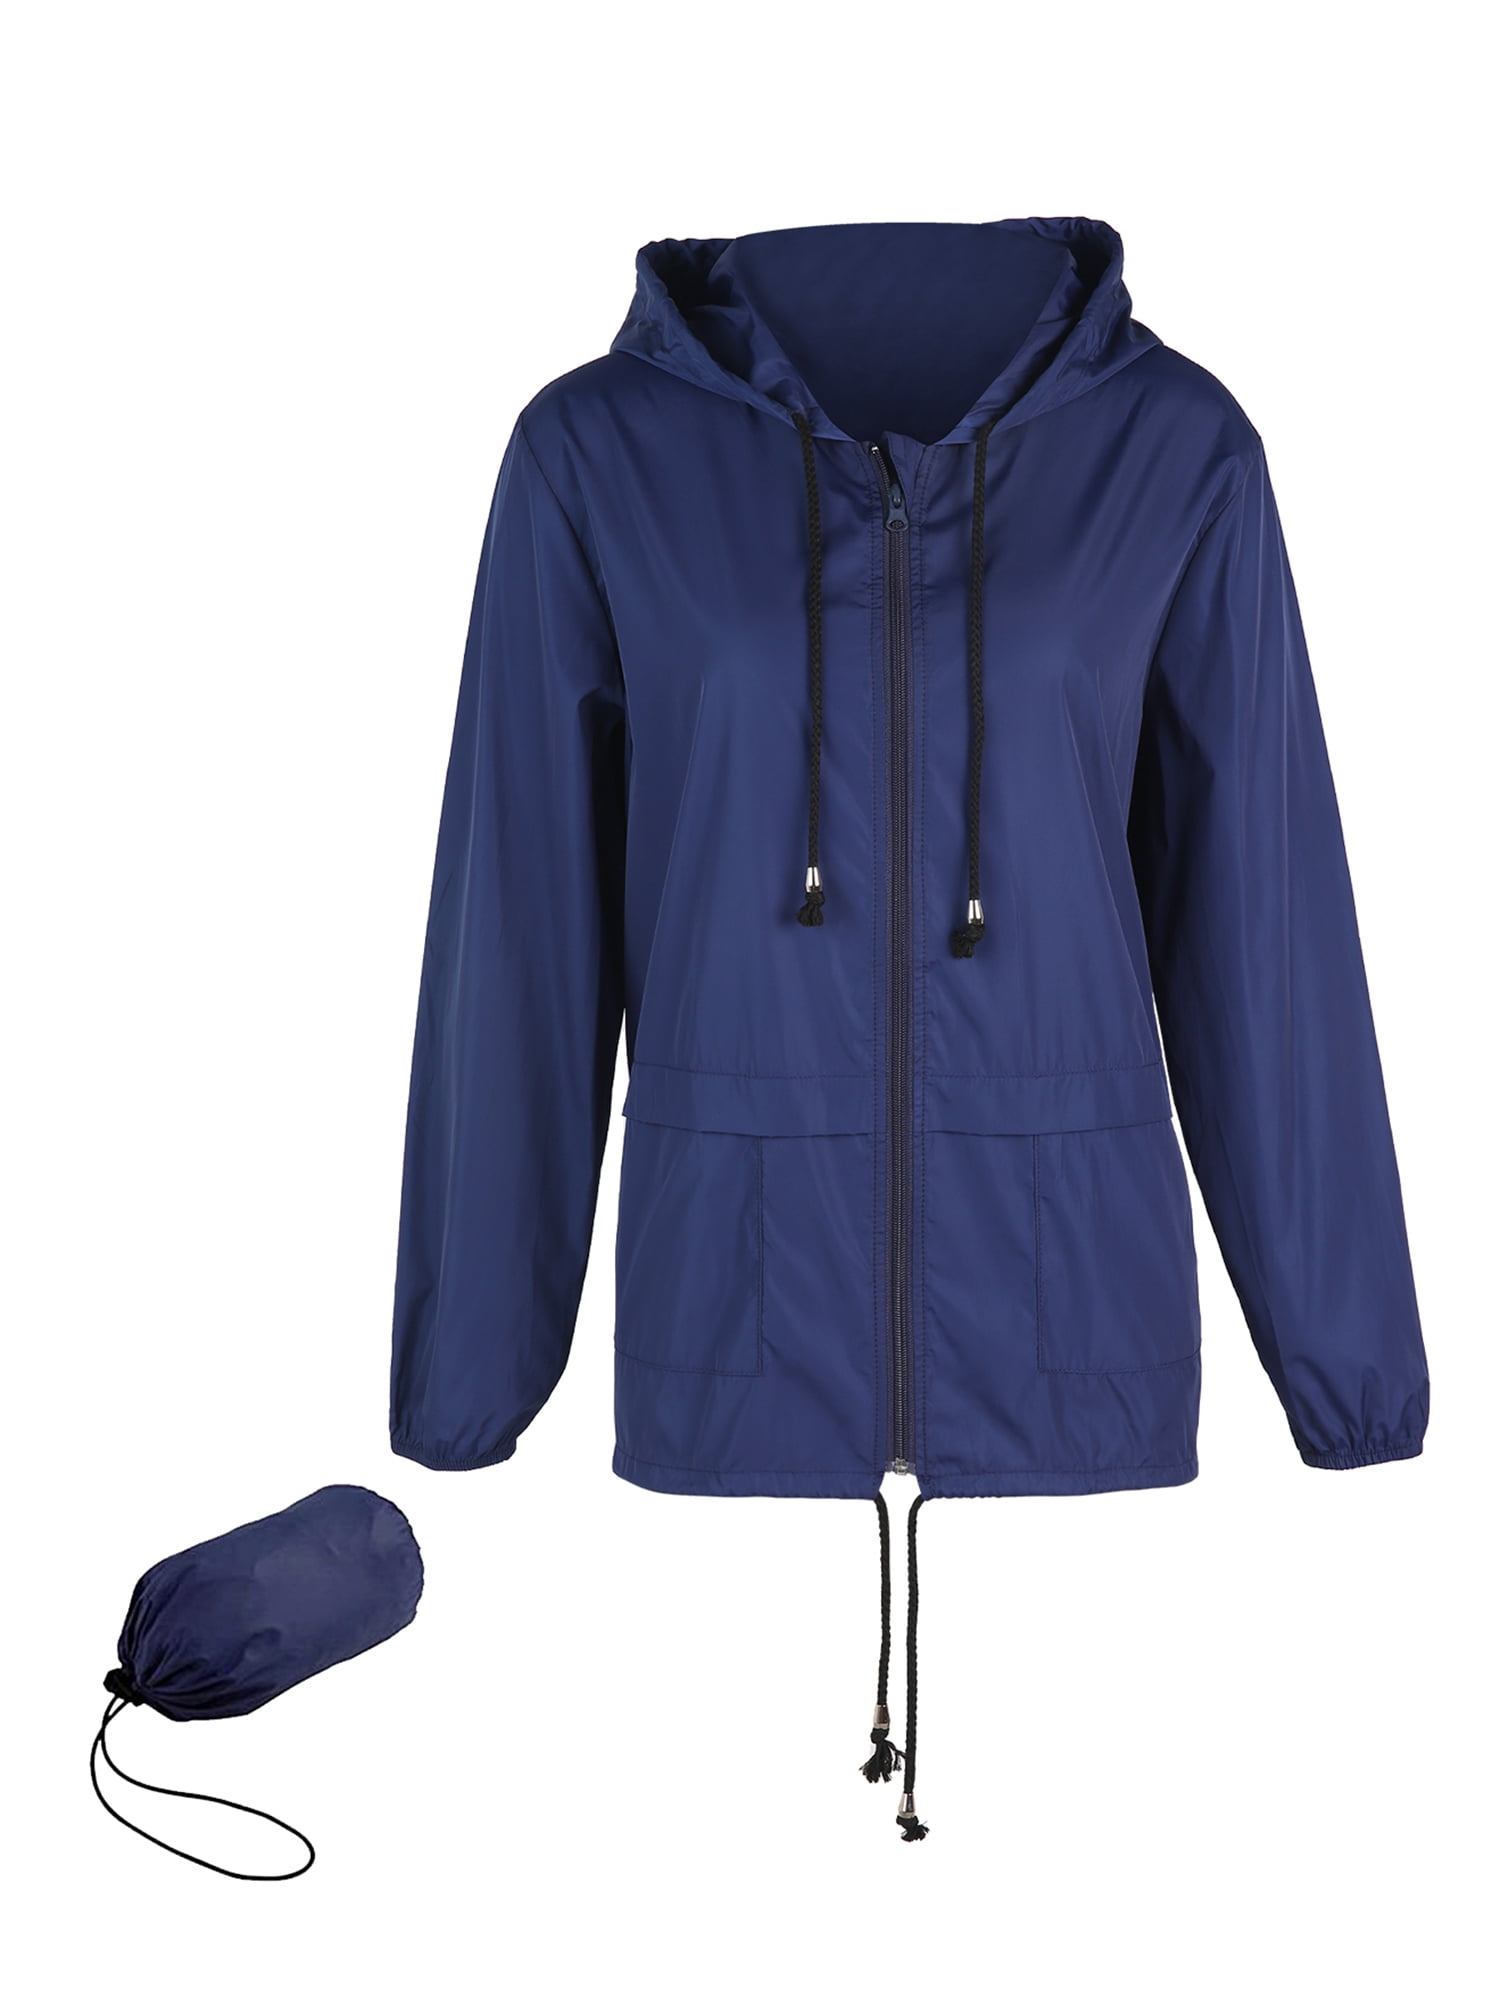 Sunisery Raincoat Women Lightweight Waterproof Rain Jackets